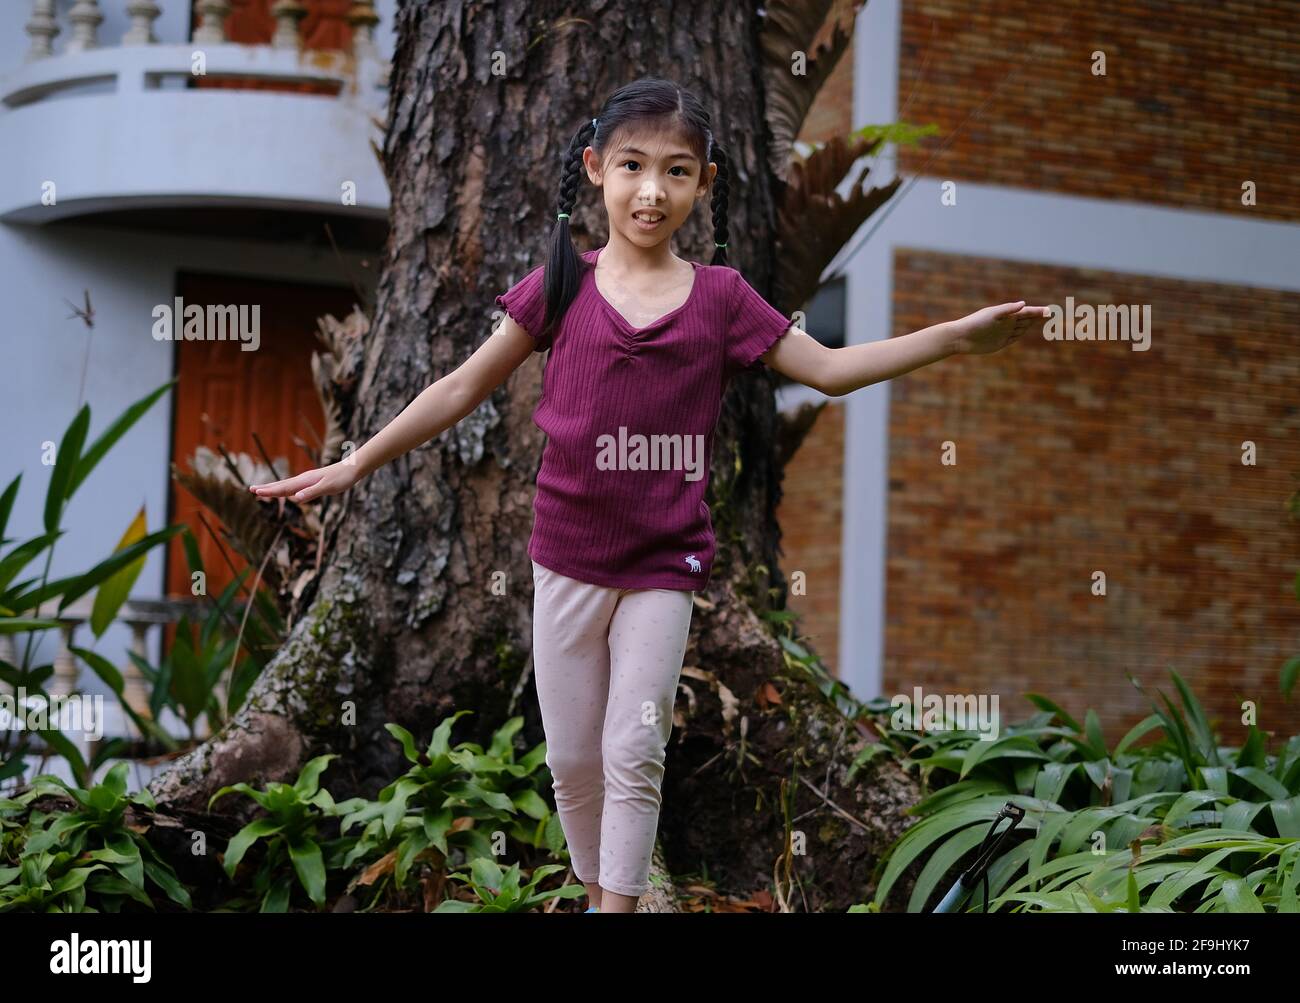 Une jeune fille asiatique mignonne est en train de marcher et de se balancer sur la racine d'un grand arbre dans son arrière-cour, en s'amusant et souriant. Banque D'Images